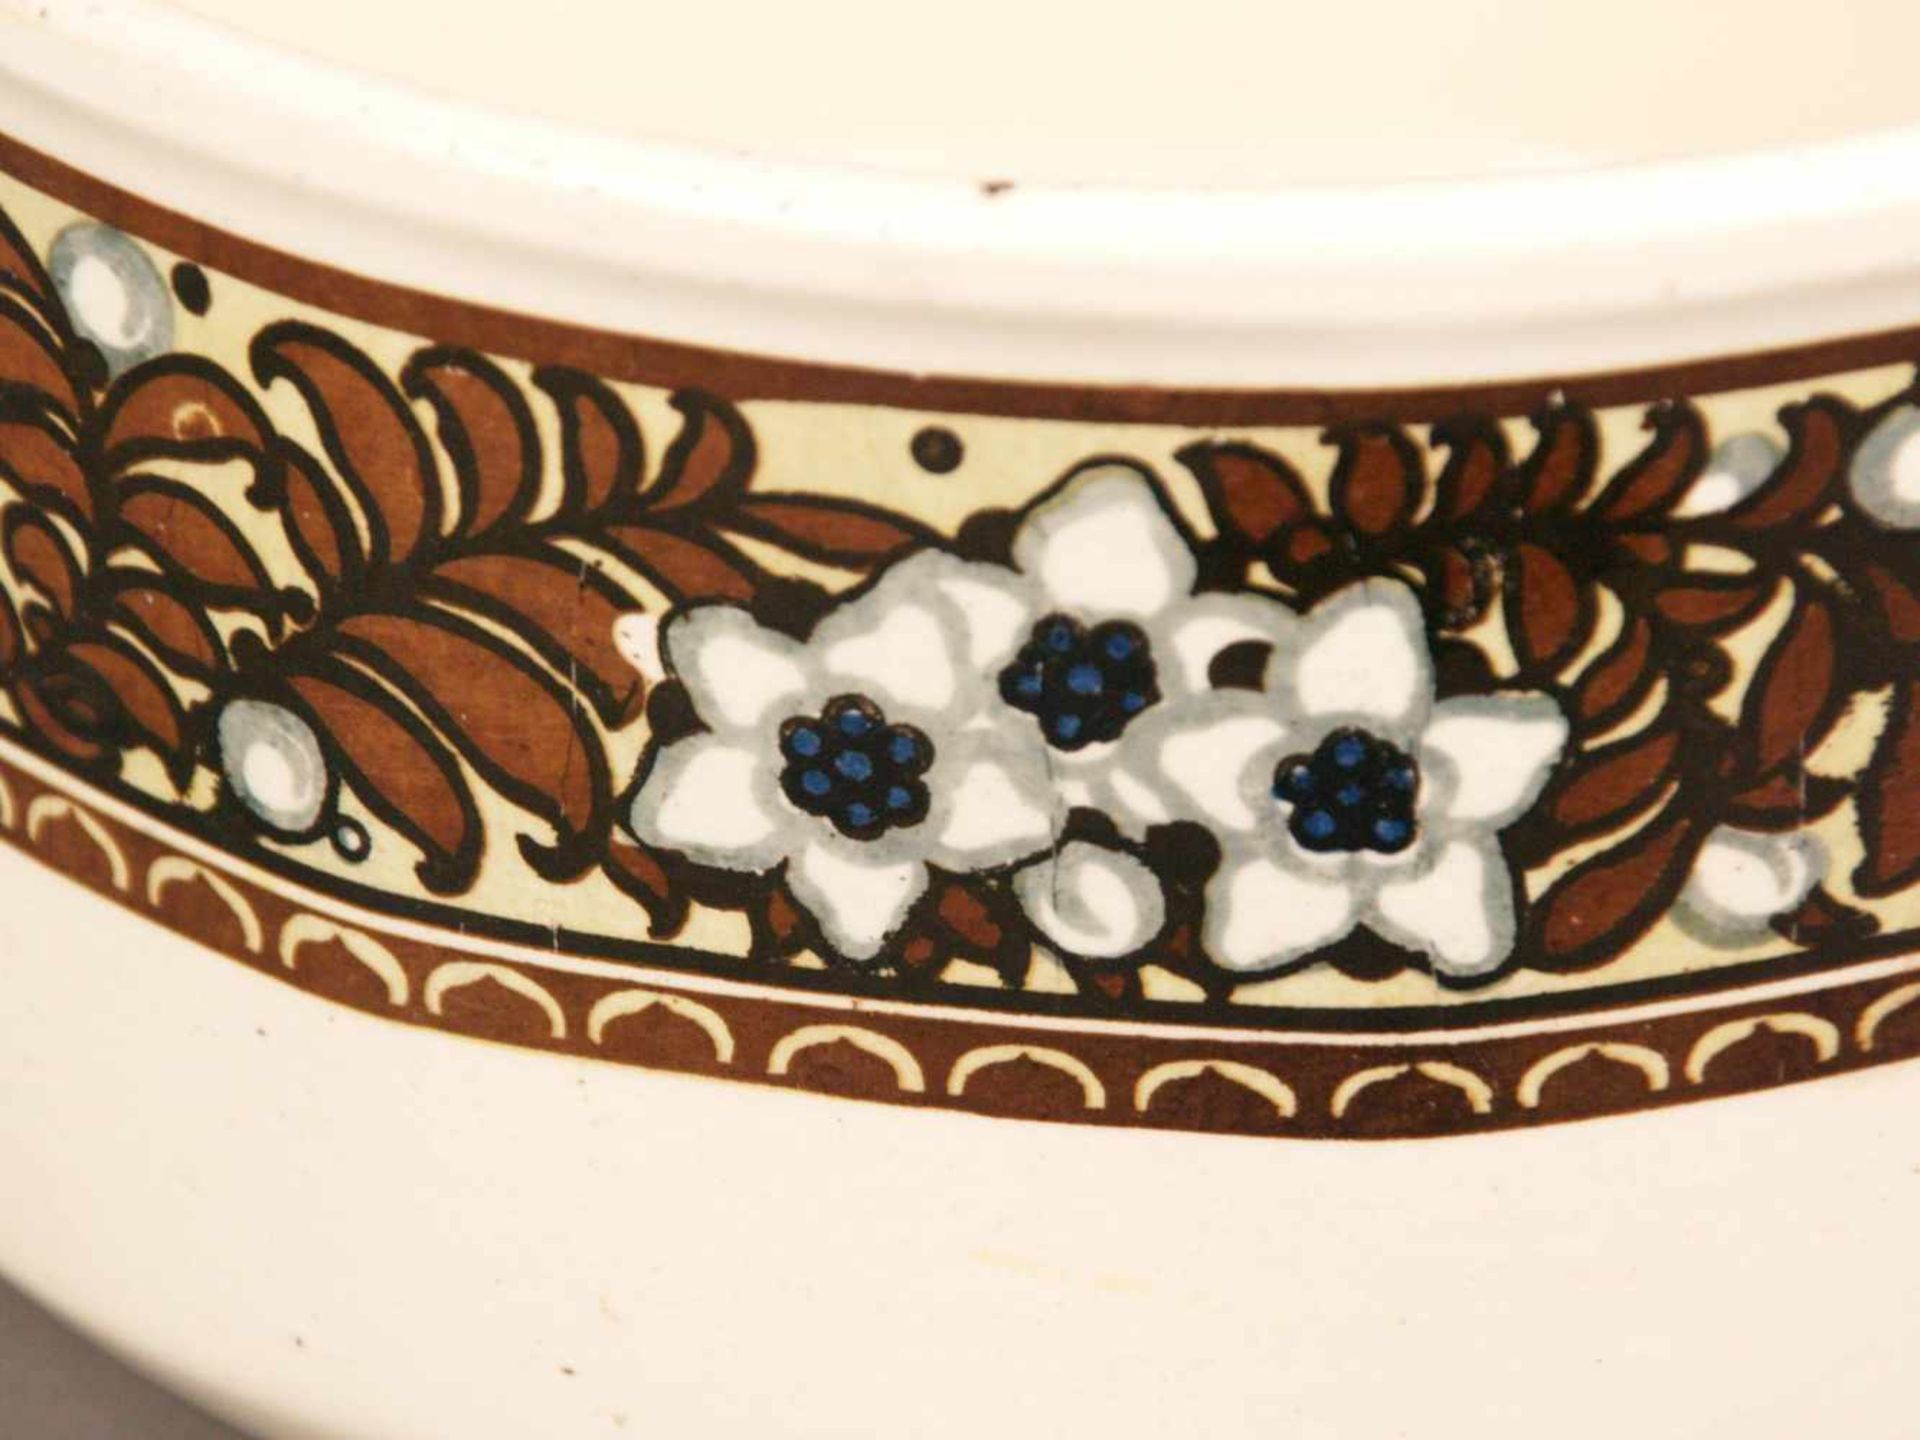 Nachtgeschirr - Villeroy & Boch, Keramik, heller Scherben, cremeweiß glasiert, umlaufend polychrom - Bild 2 aus 6